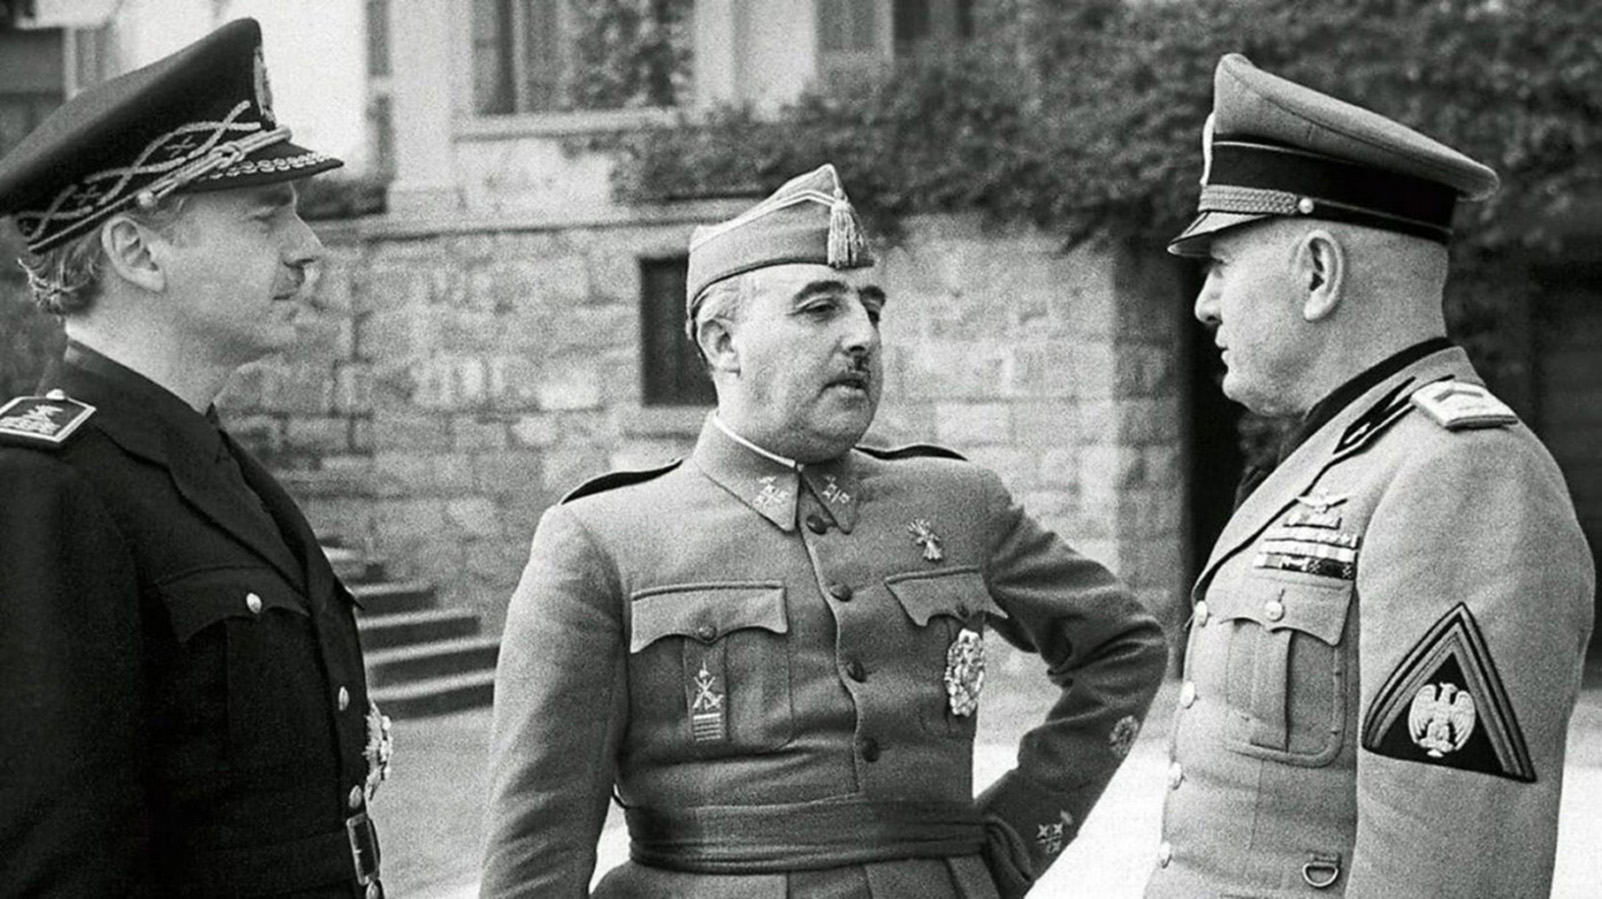 Diario de guerra: Entrevista de Bordighera entre Franco y Mussolini -  Historia Hoy